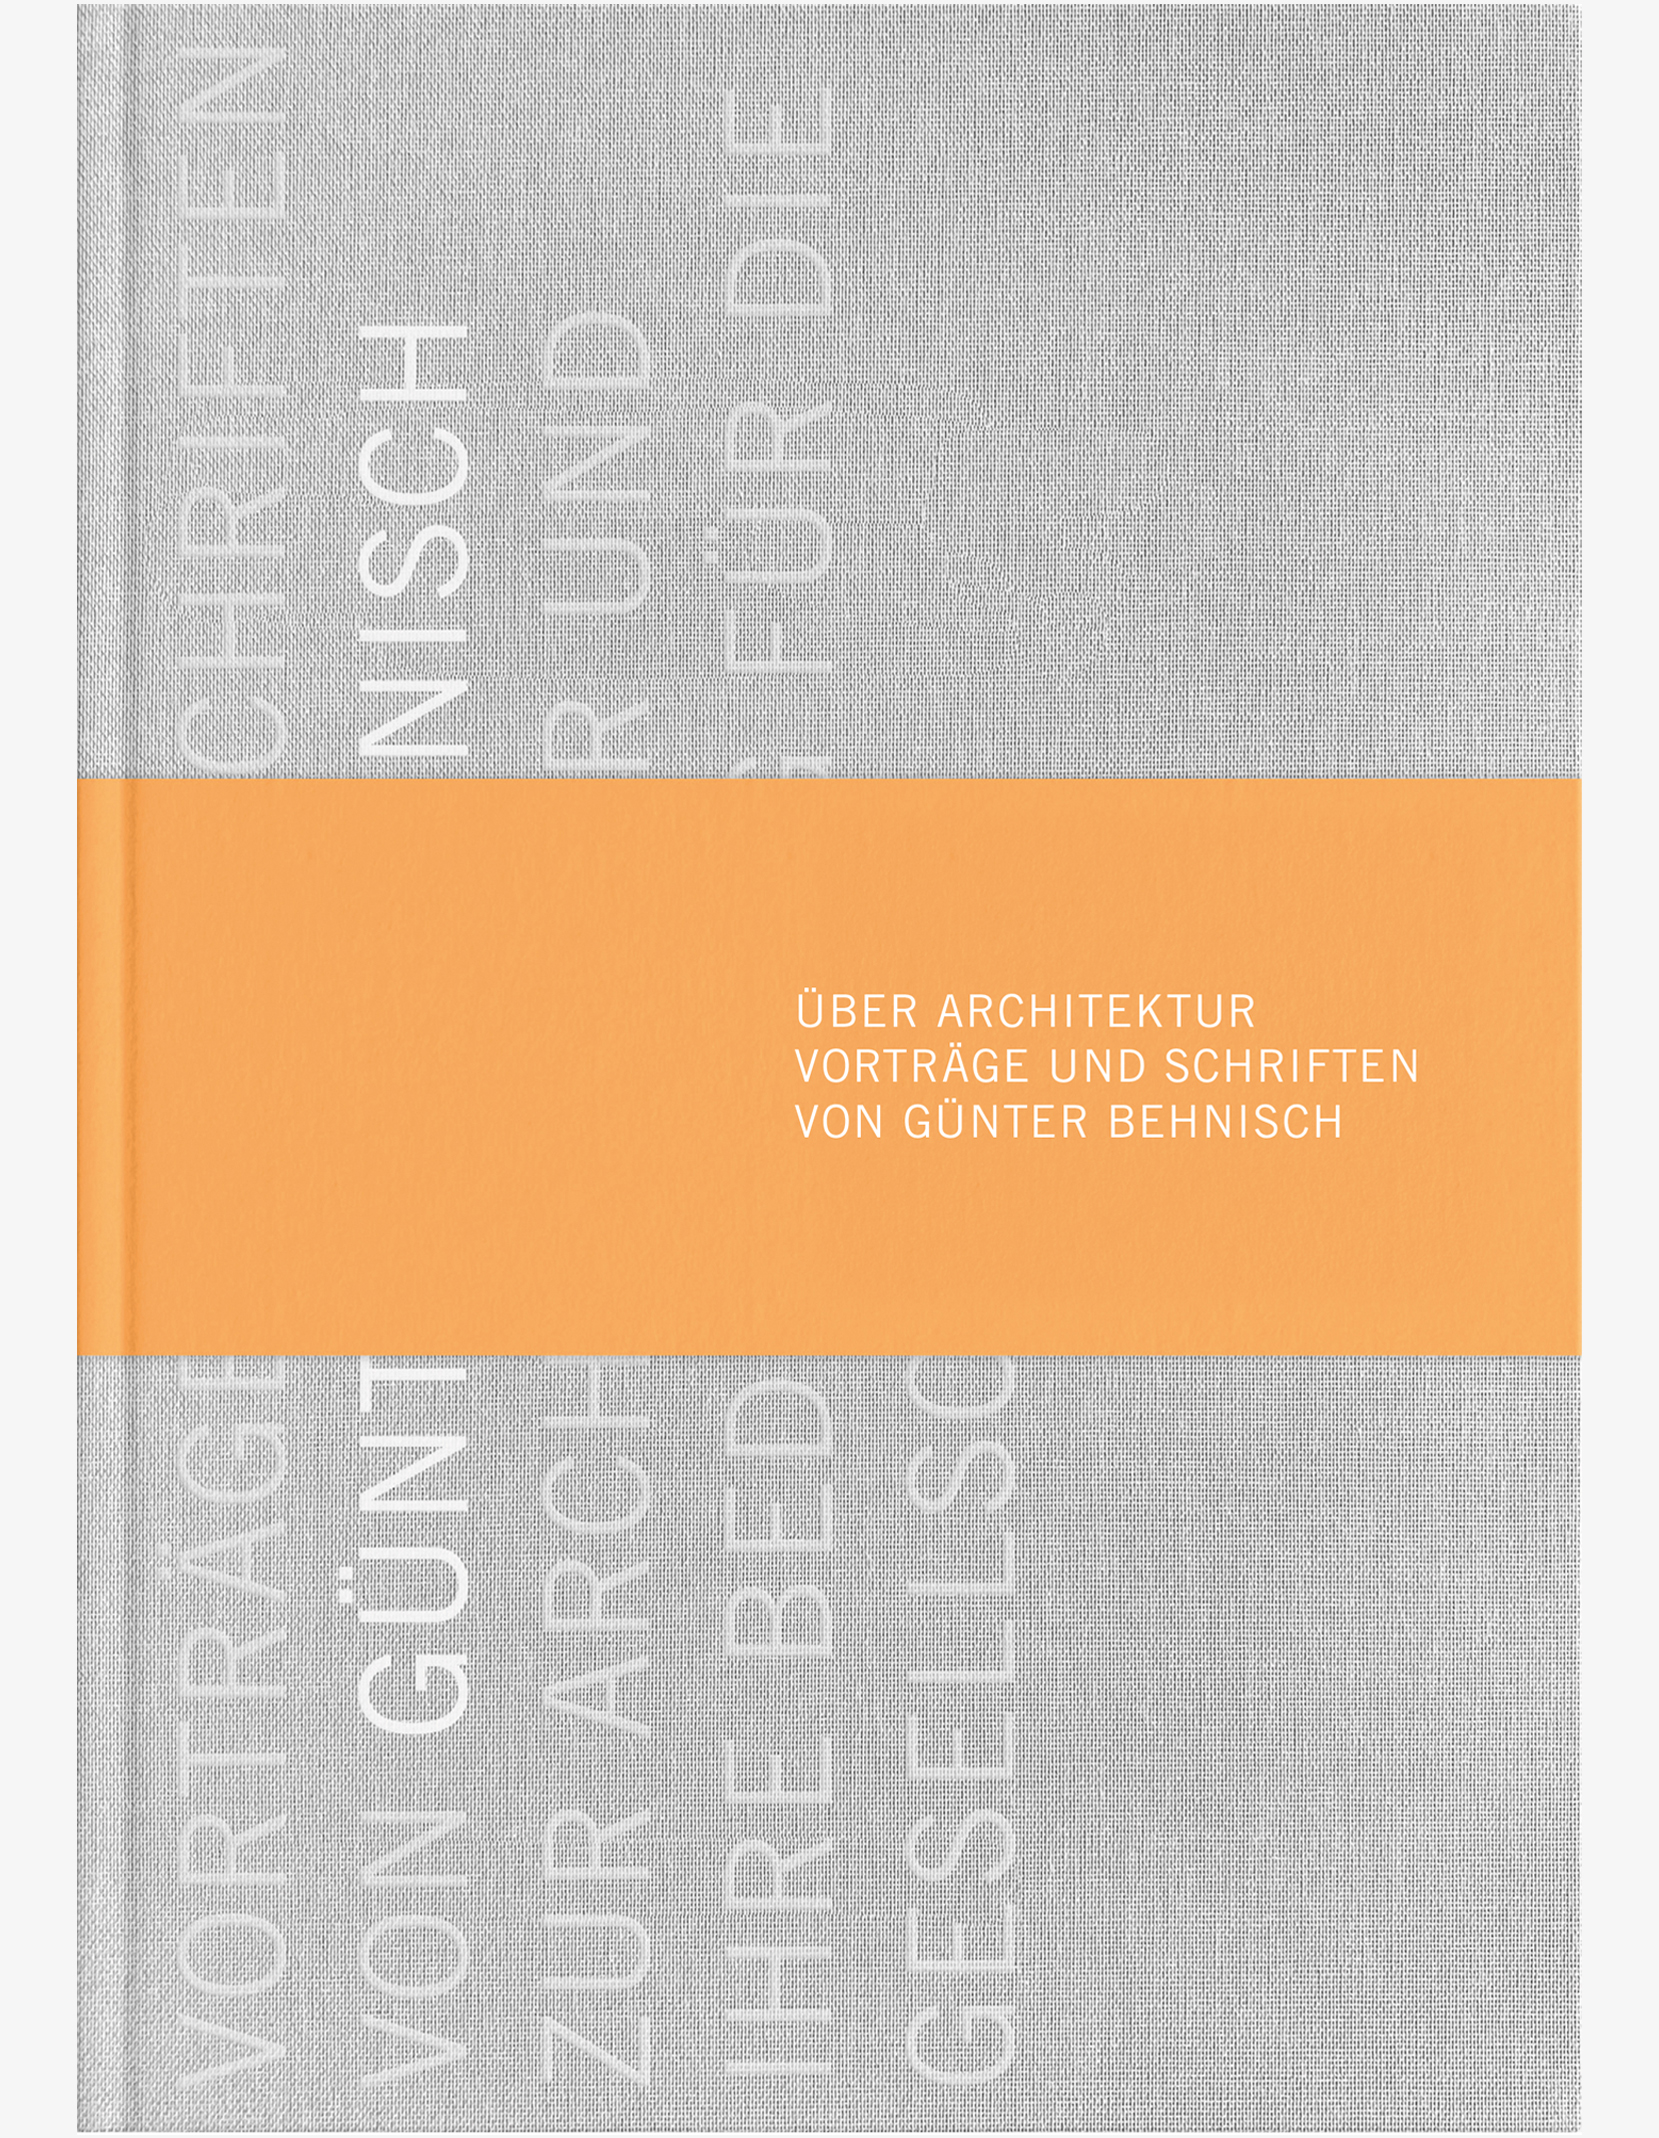 Über Architektur. Vorträge und Schriften von Günter Behnisch